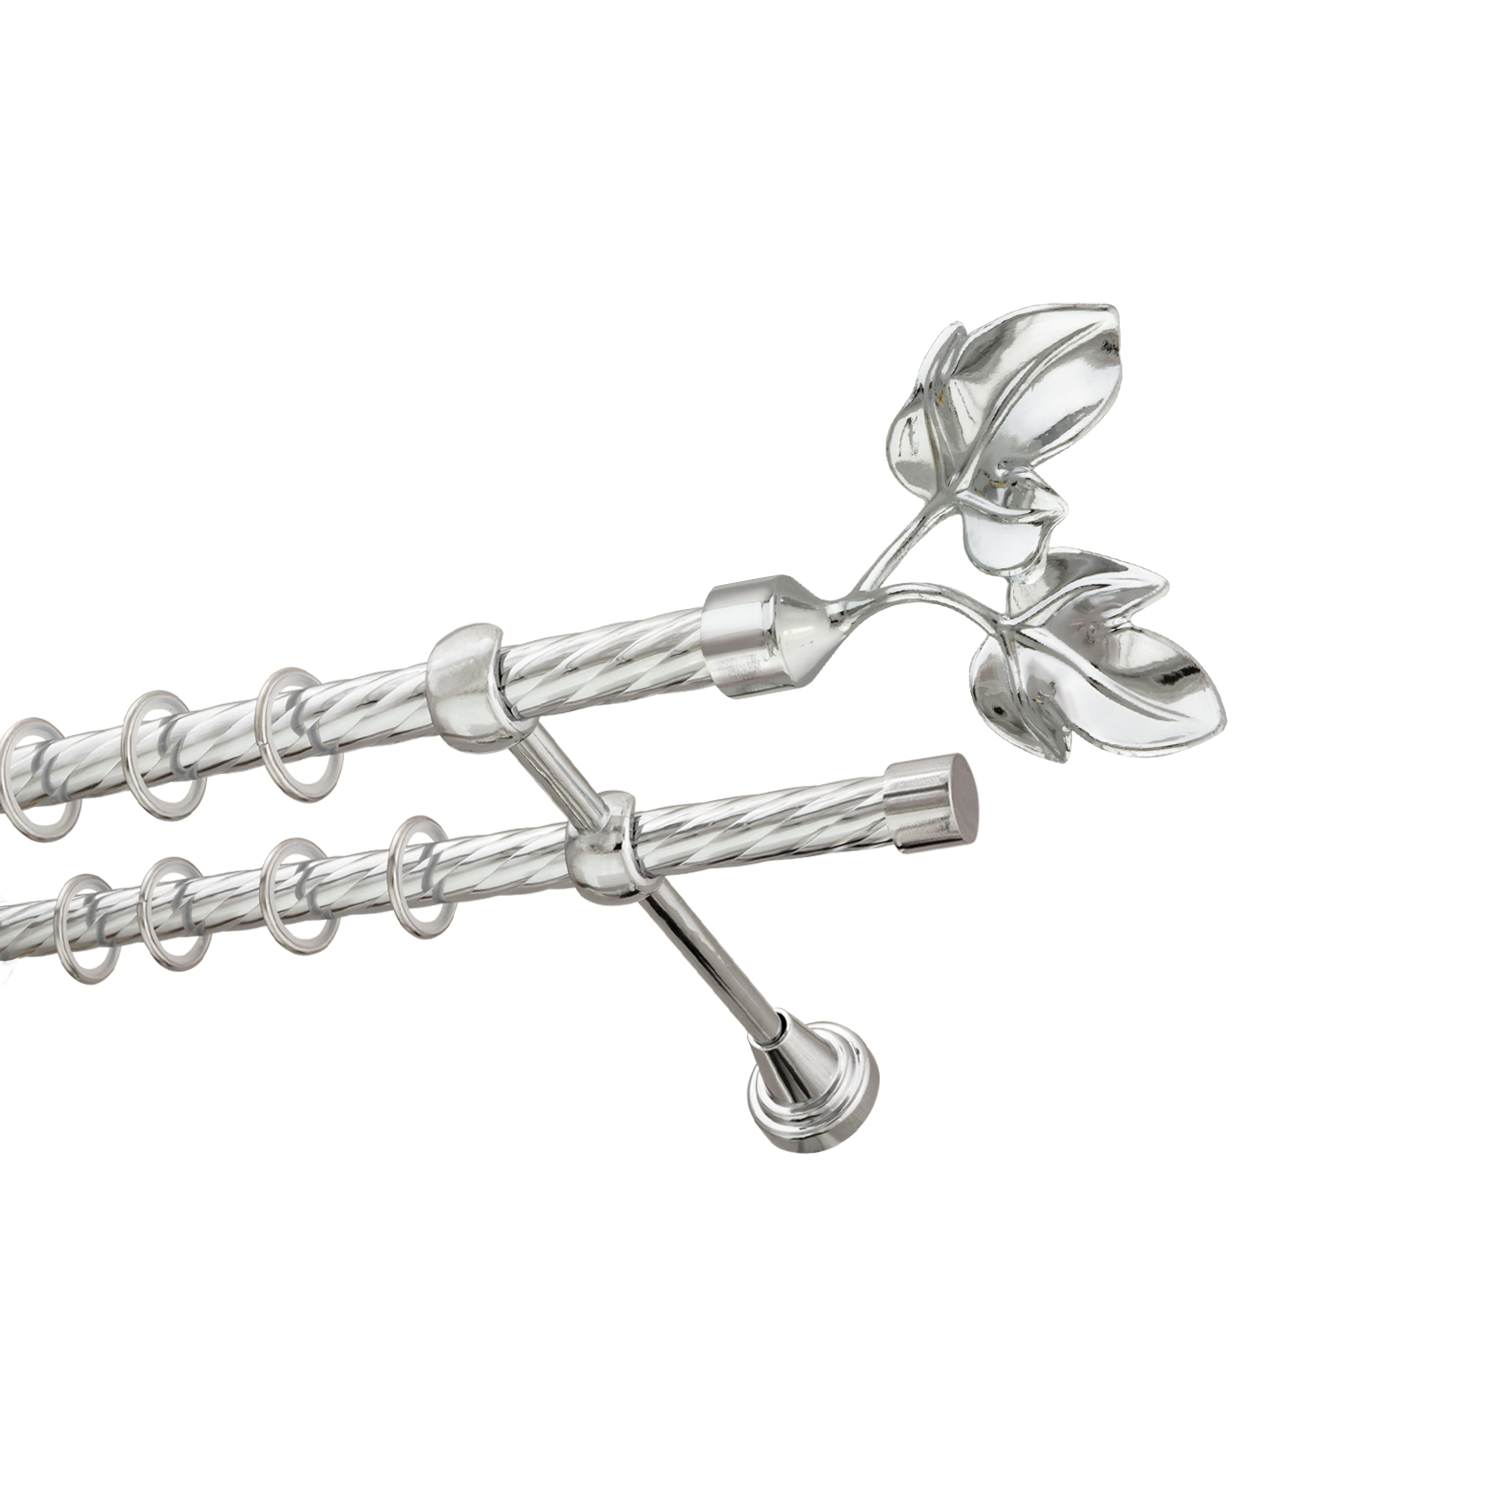 Металлический карниз для штор Листья, двухрядный 16/16 мм, серебро, витая штанга, длина 160 см - фото Wikidecor.ru